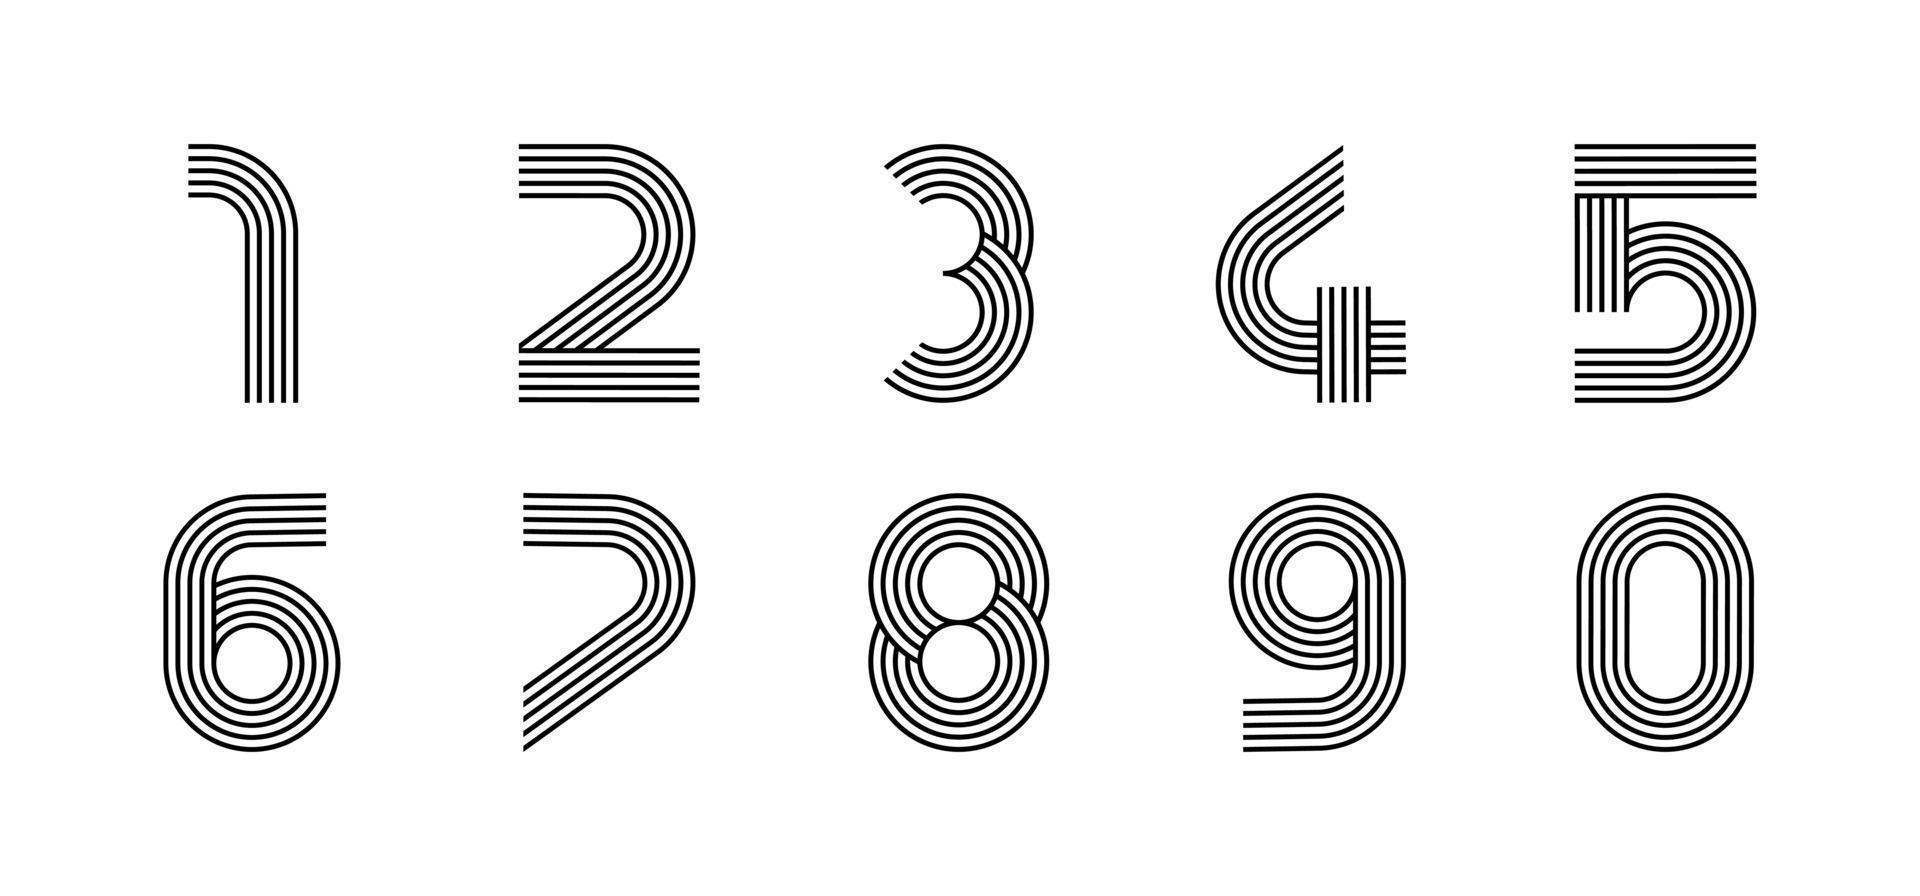 Ziffern lineares modernes Logo. alle Nummern in Strichstreifenform. alphabet zahl zeichen und zahl lineares abstraktes design. Logo, Corporate Identity, App, kreatives Poster und mehr. vektor